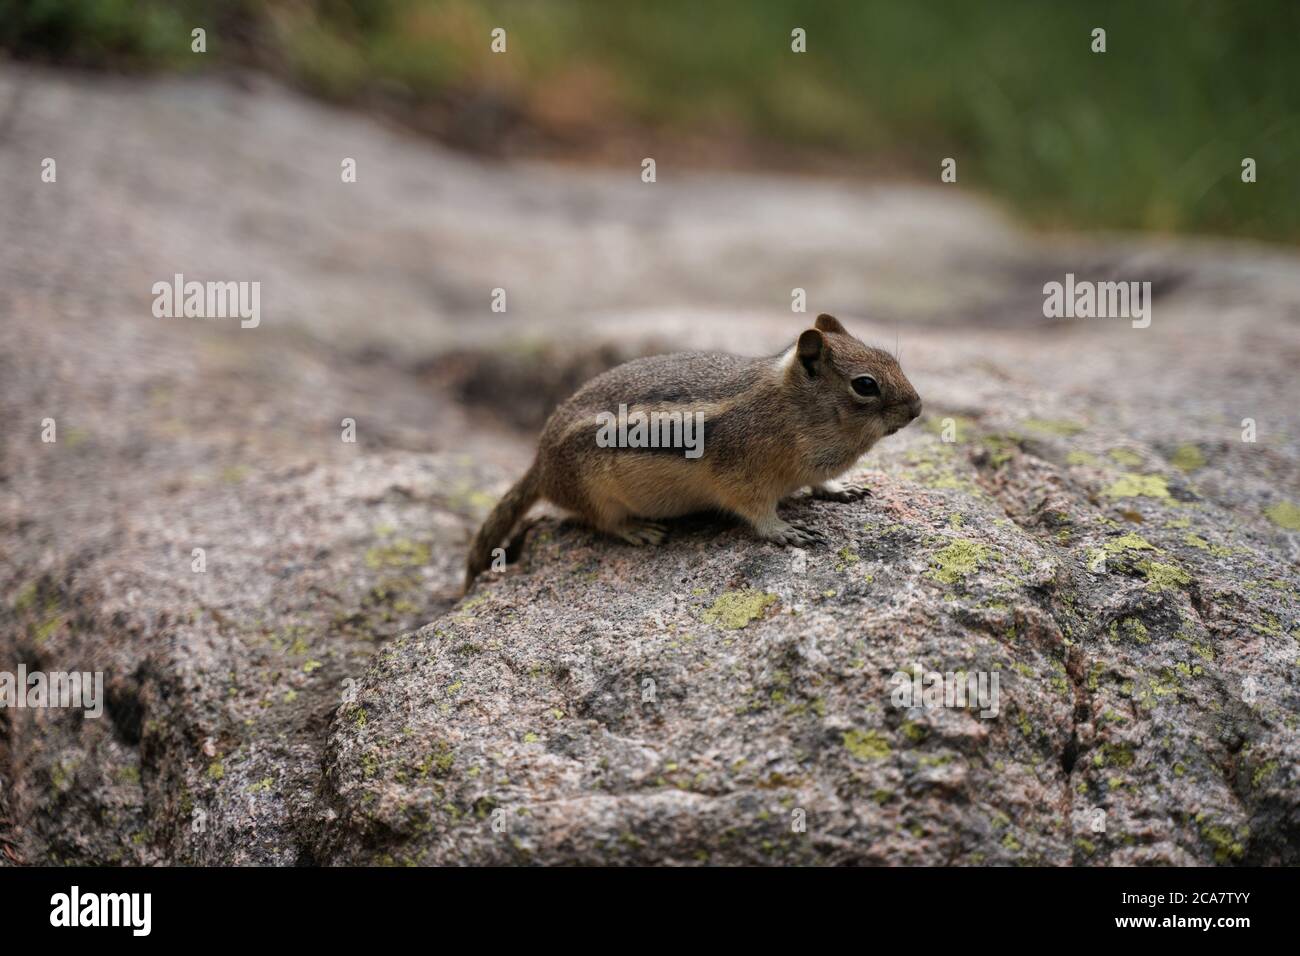 Chipmunk seduto sulla roccia. Profondità di campo poco profonda, sfondo sfocato. Roditore piccolo e ravvicinato Foto Stock